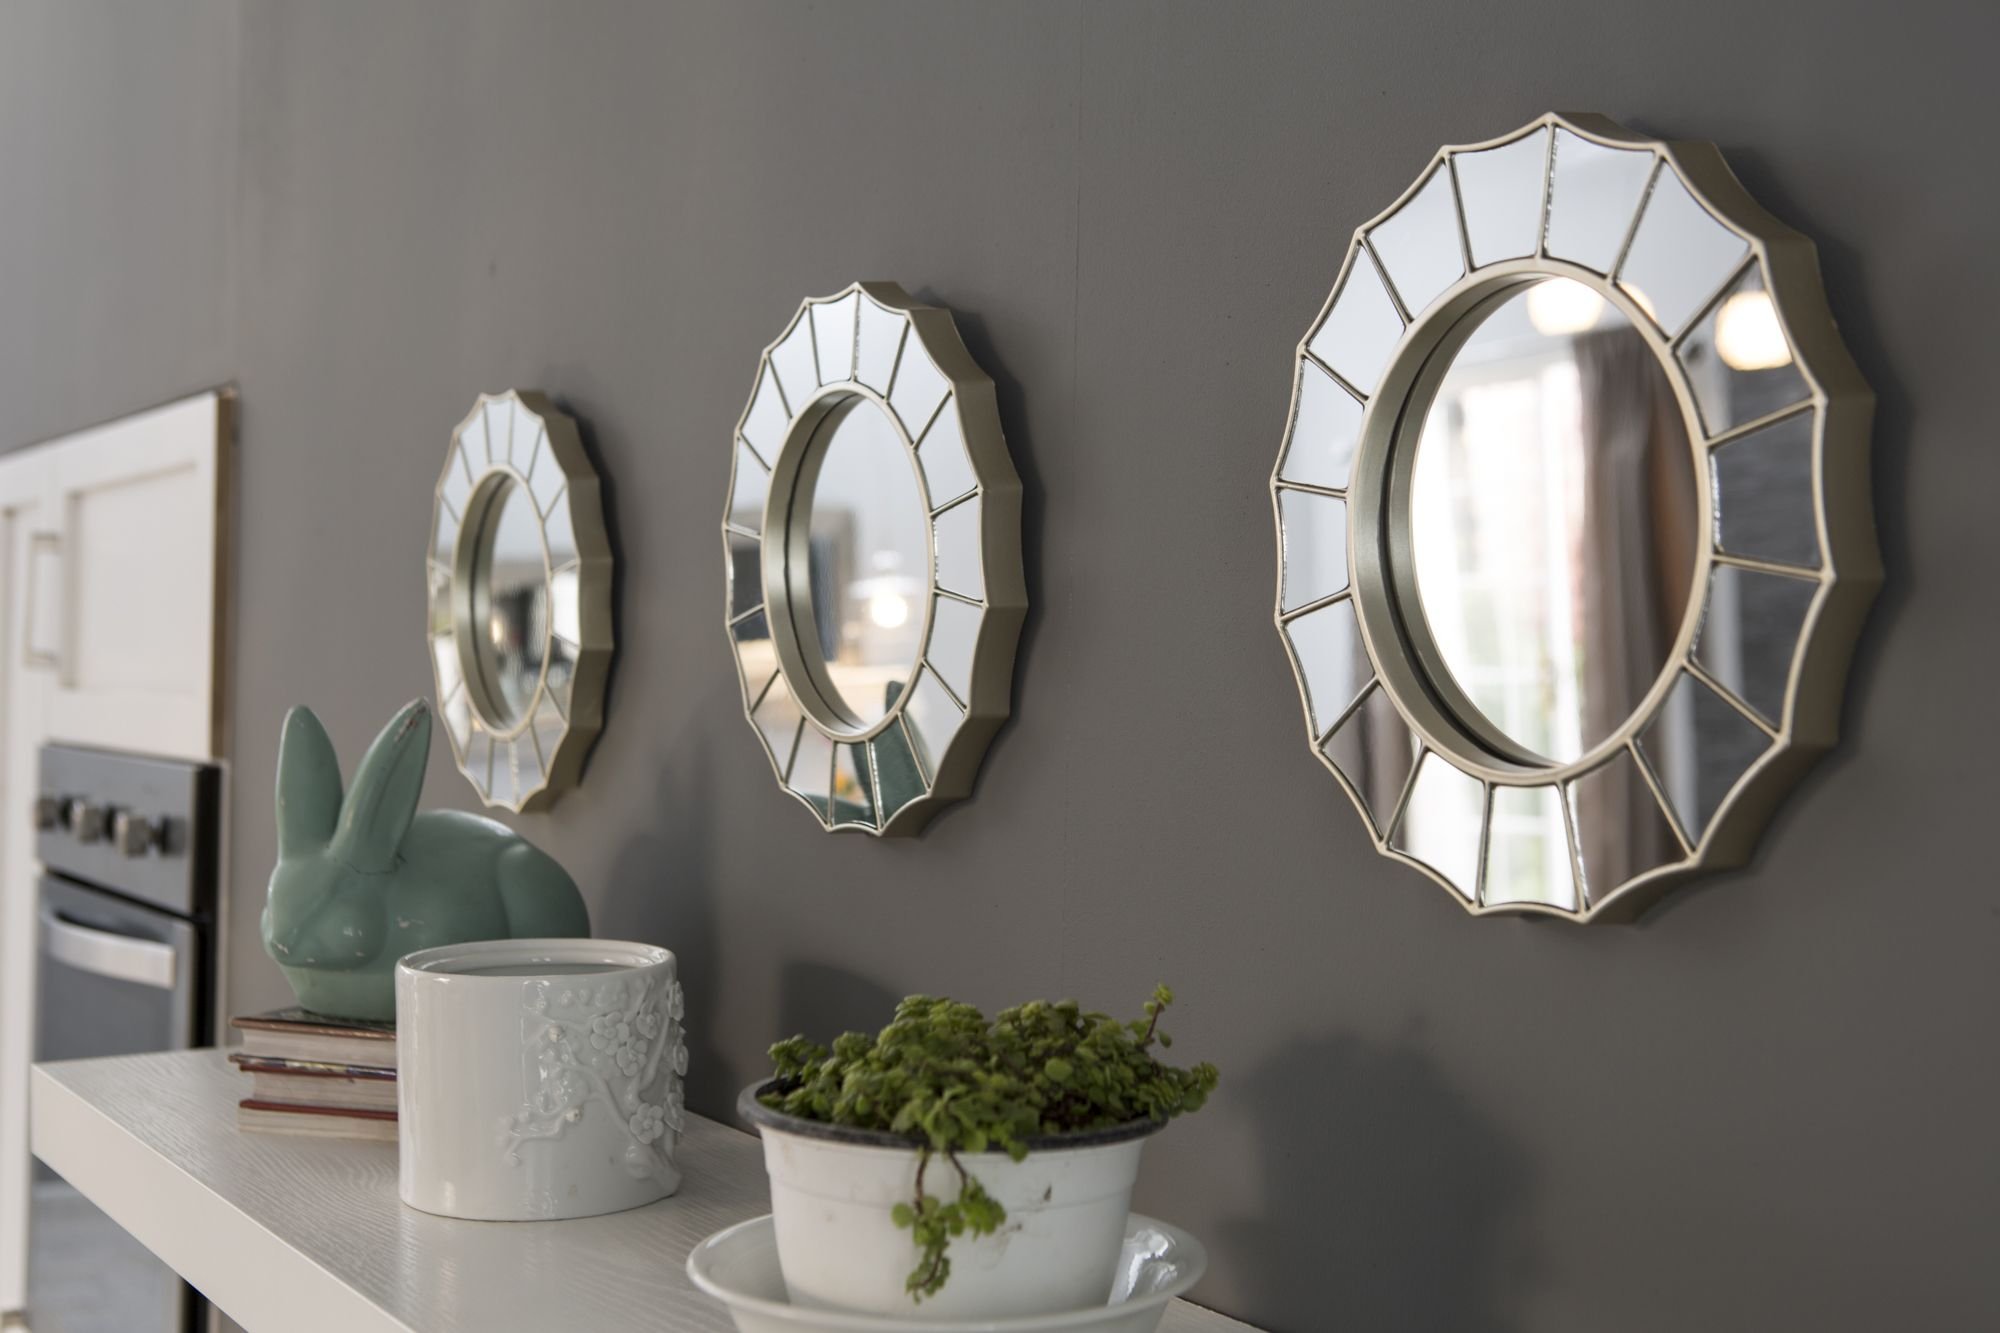 Купить комплект зеркал. QWERTY комплект декоративных зеркал "Булонь", бронза, 3шт, d12 см /16. Дизайнерские зеркала для интерьера. Набор зеркал. Набор зеркал на стену.